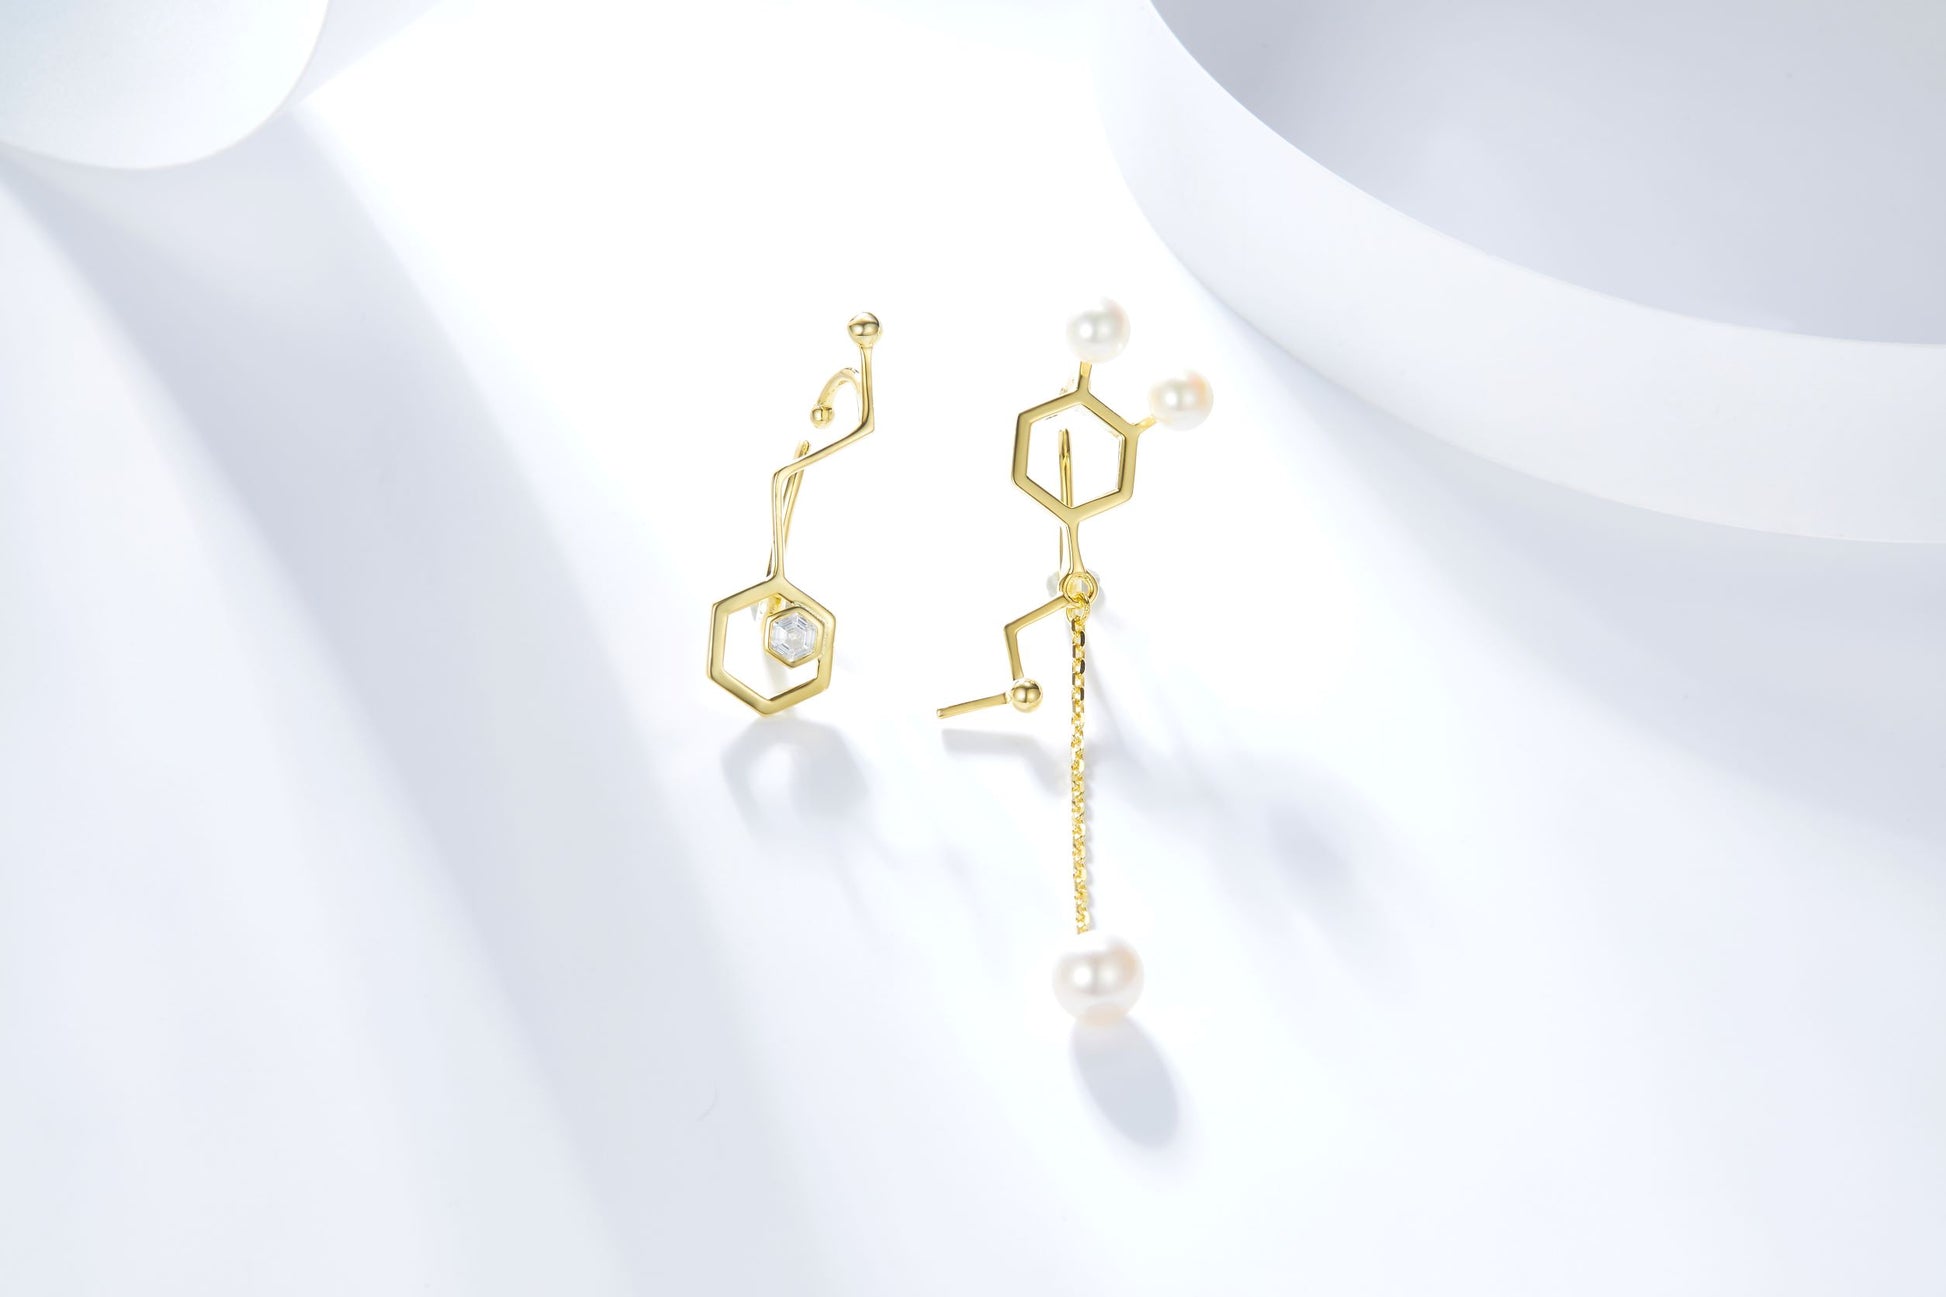 Golden Molecule Structure Shape Enamel with Pearl Ear Bone Clips for Women